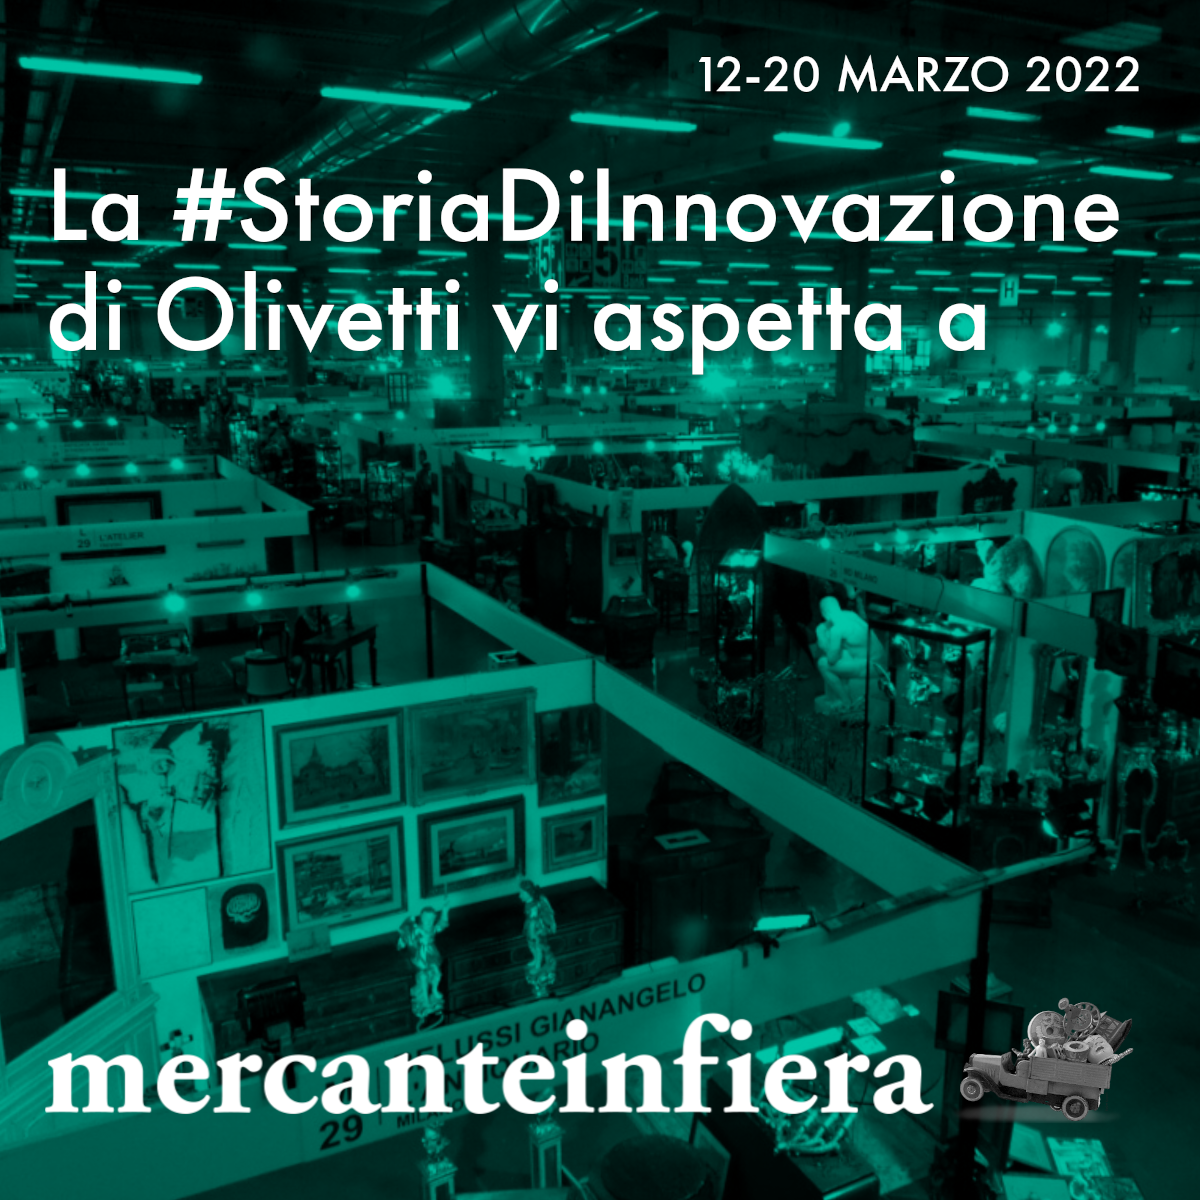 La #StoriaDiInnovazione Olivetti a Mercanteinfiera primavera